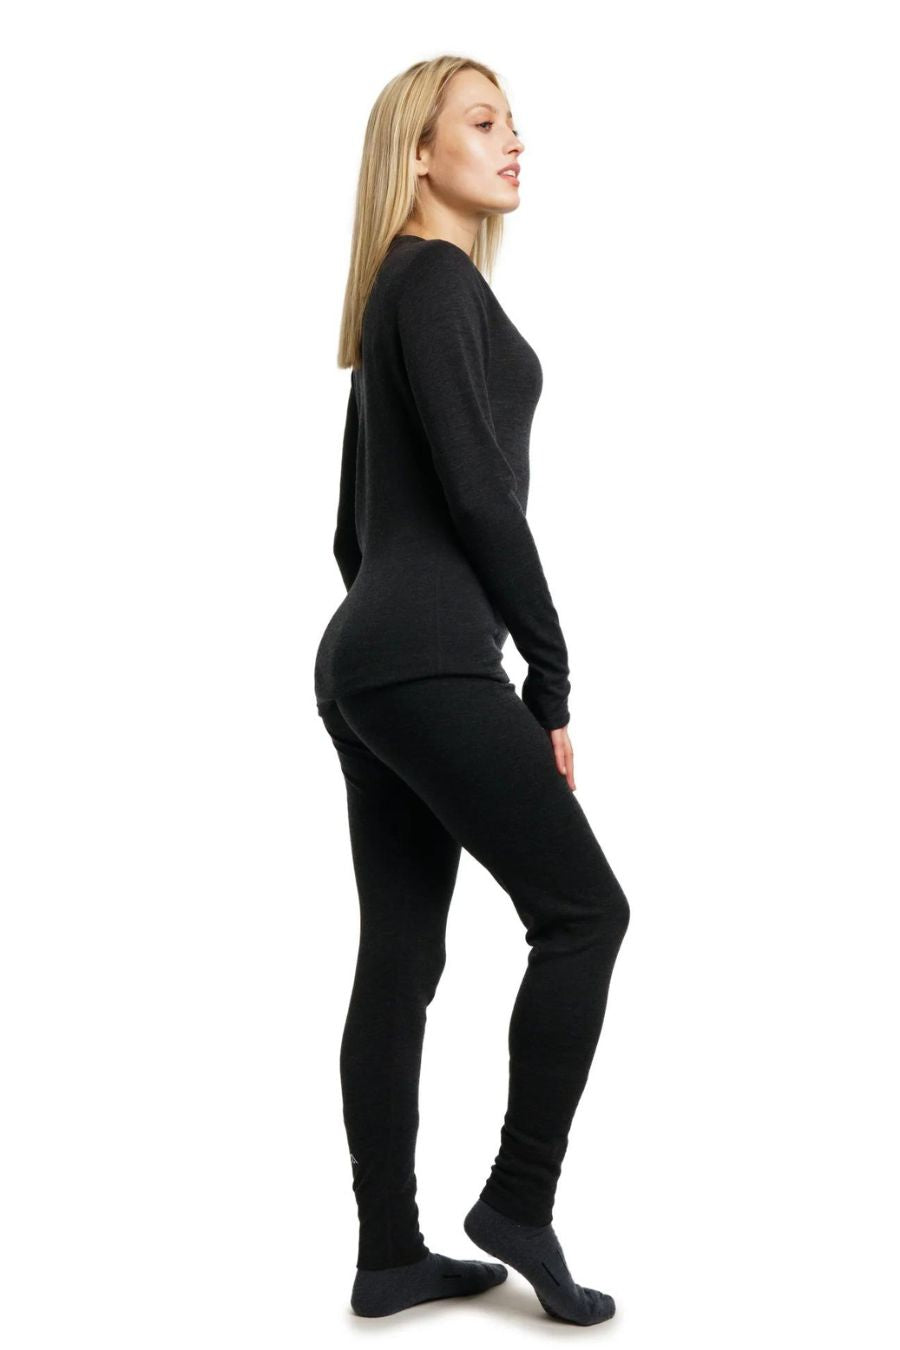  Merino.tech Merino Wool Baselayer Womens Set - Lightweight Merino  Wool Thermal Underwear For Women Top And Bottom